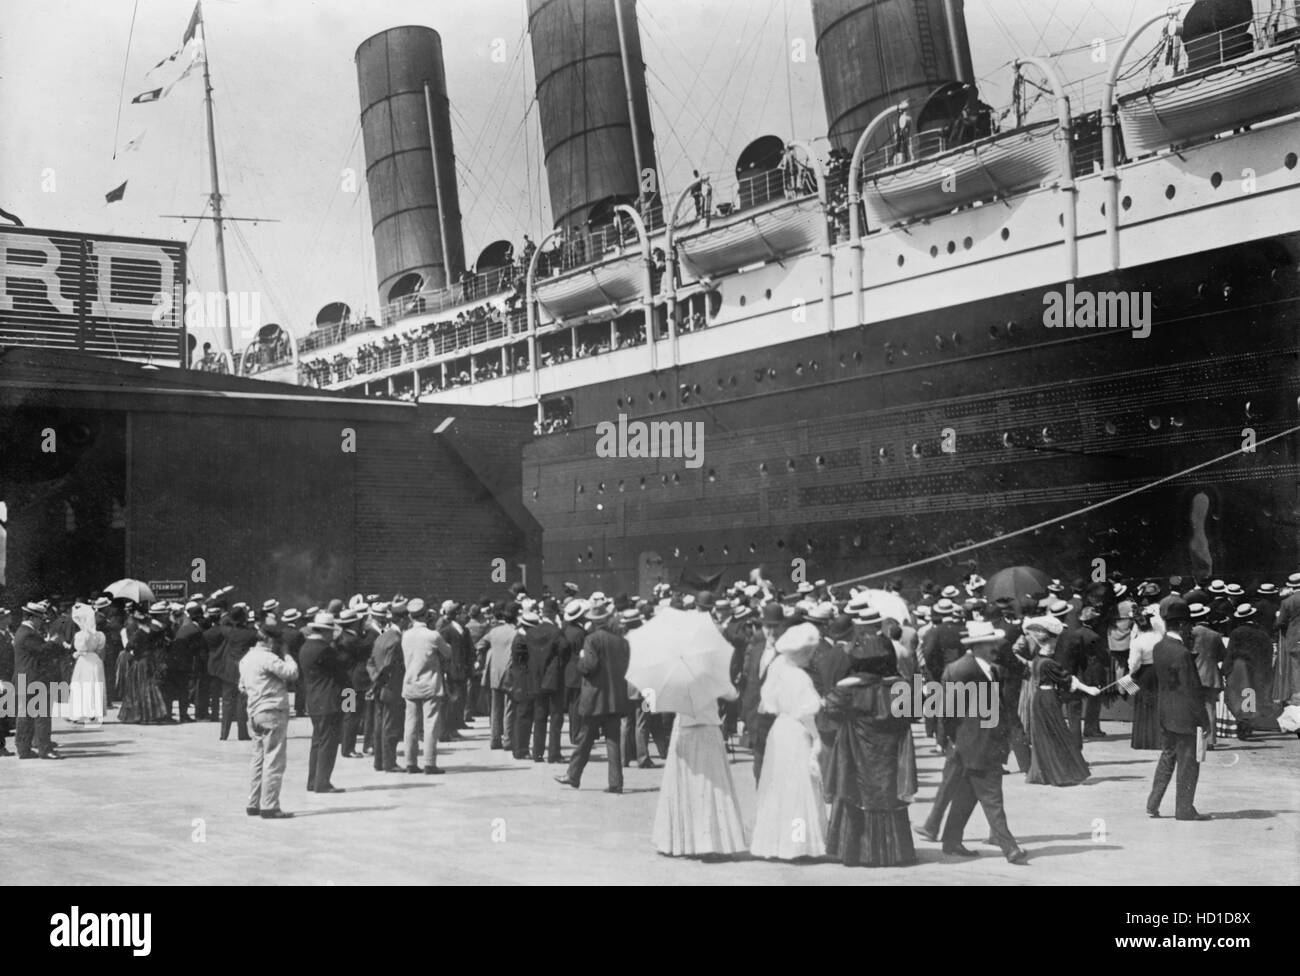 Lusitania arrivant à quai, New York City, New York, USA, Bain News Service, Septembre 1907 Banque D'Images